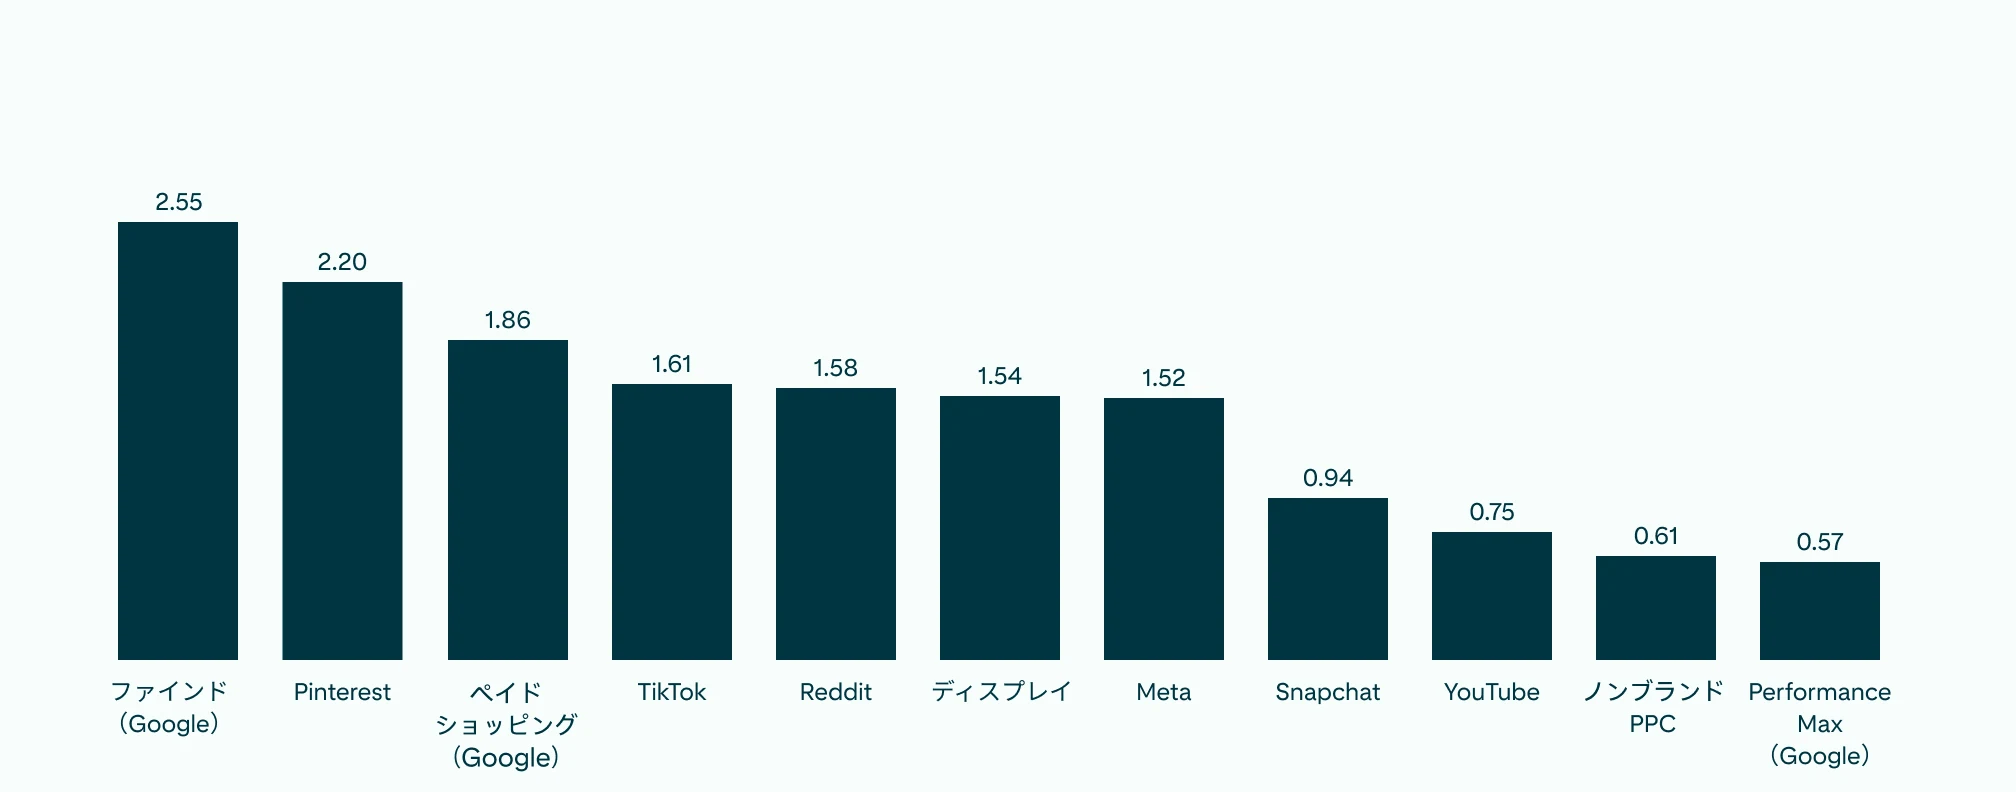    Pinterest は Discovery よりわずかに低いものの他社よりも際立っていることを示す、全ソーシャルメディアチャネルの ROAS を示す棒グラフ。